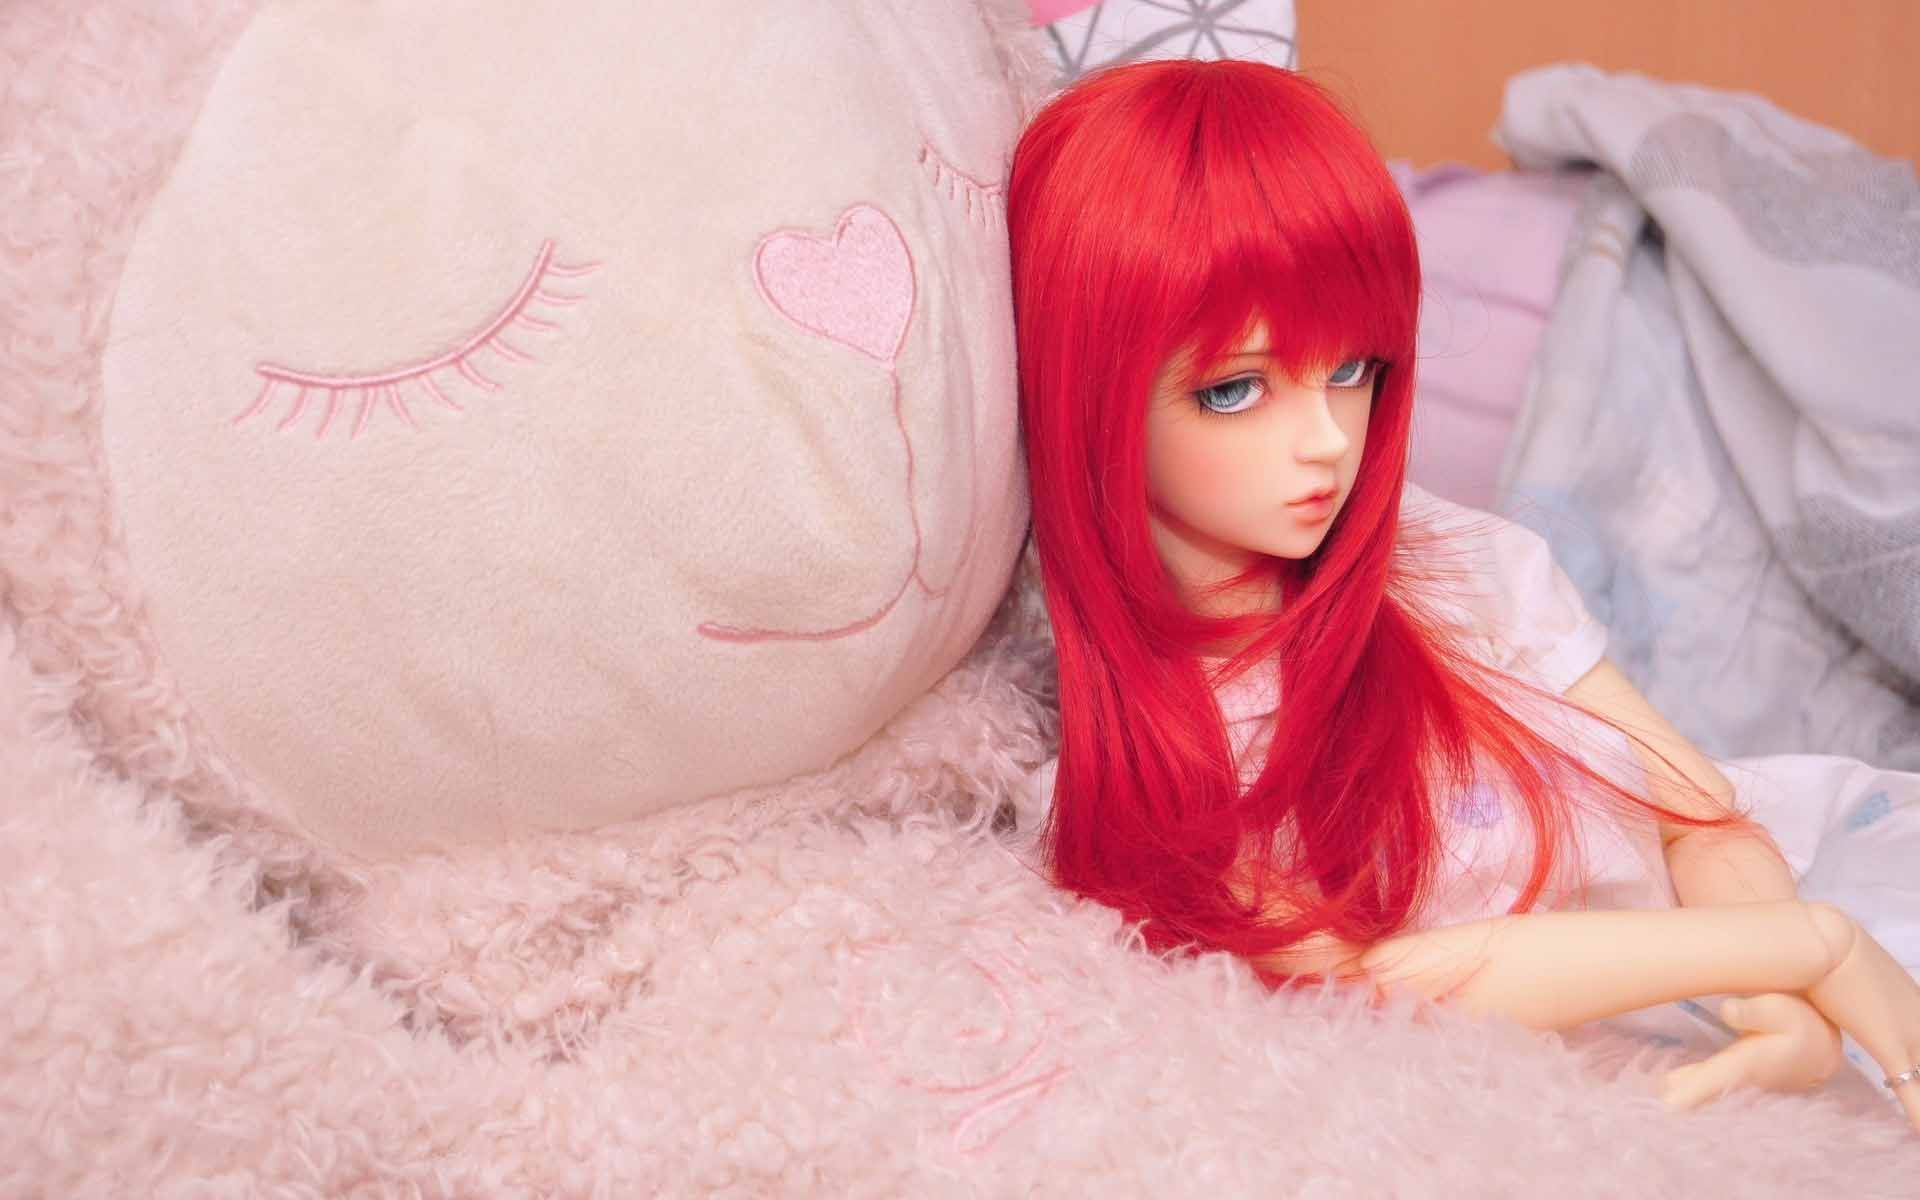 Redhead Doll Toy HD Wallpaper Doll Teddy Bear